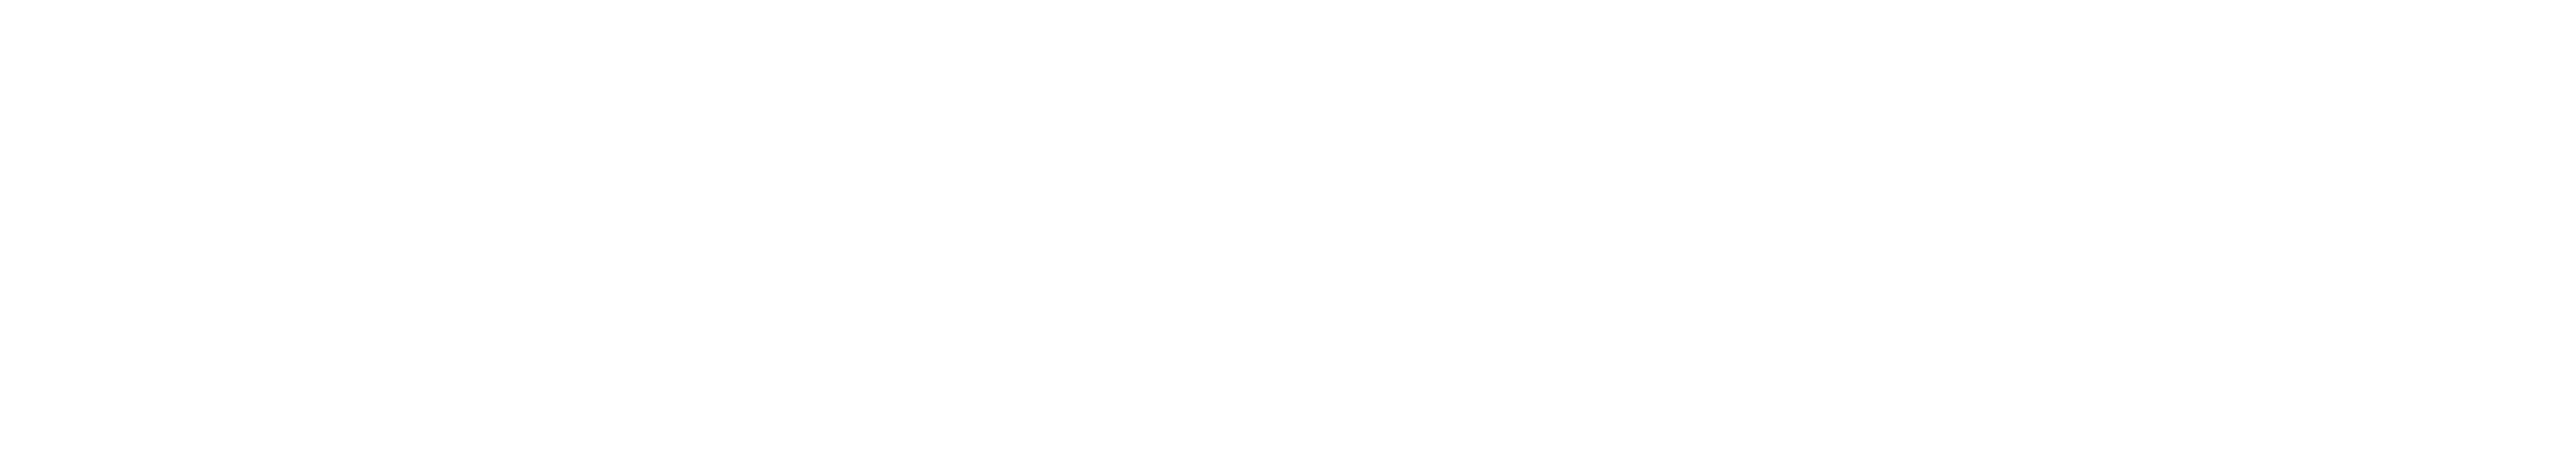 PT Urban Spasial Indonesia